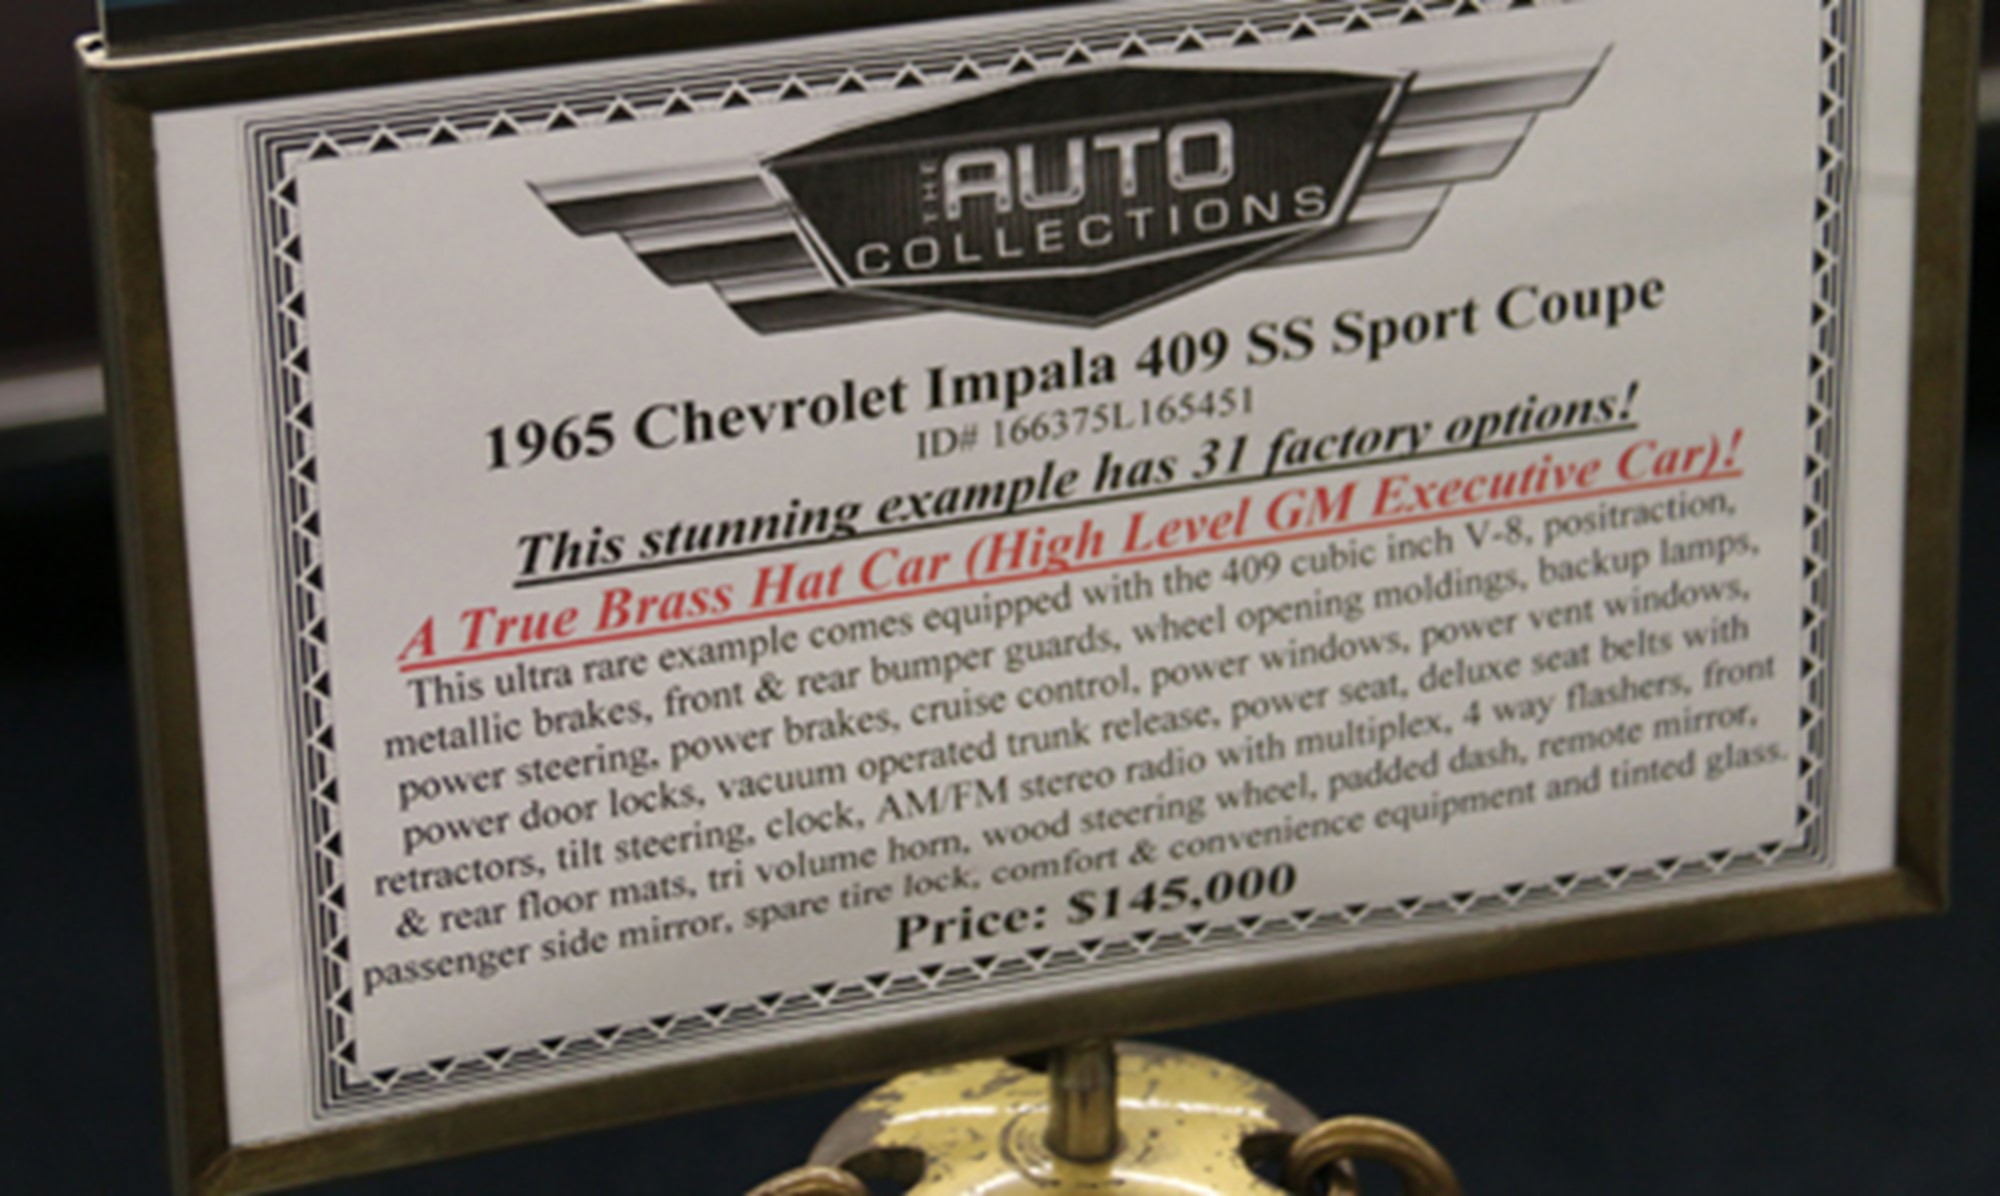 Detta är en av få Impalas från 1965 med 409 motor! Detta avspeglar sig såklart även på prislappen.